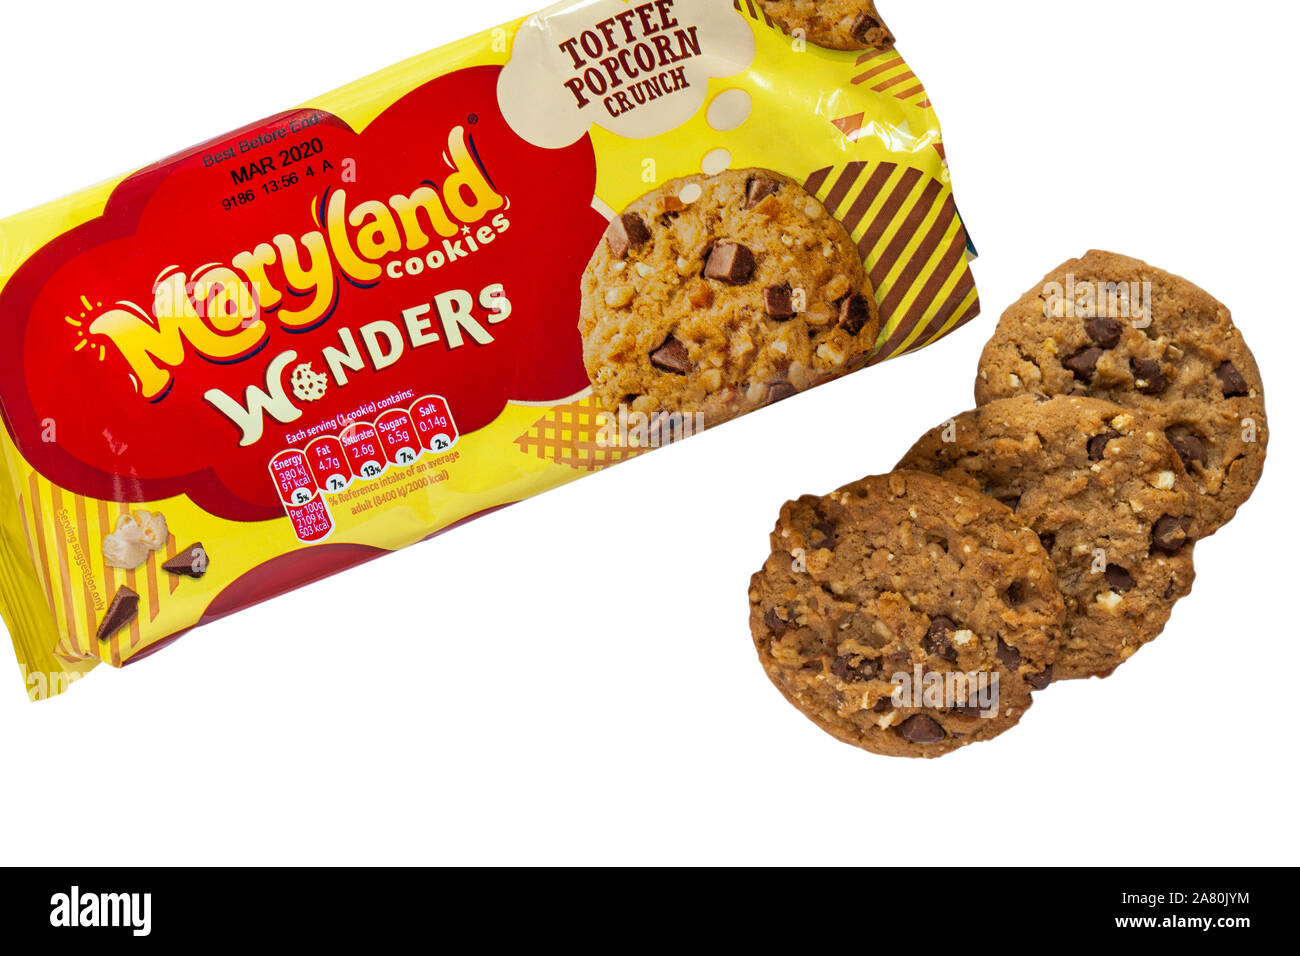 Pacchetto di Maryland cookies meraviglie toffee popcorn crunch aperto a con contenuto rimosso impostato su sfondo bianco Foto Stock